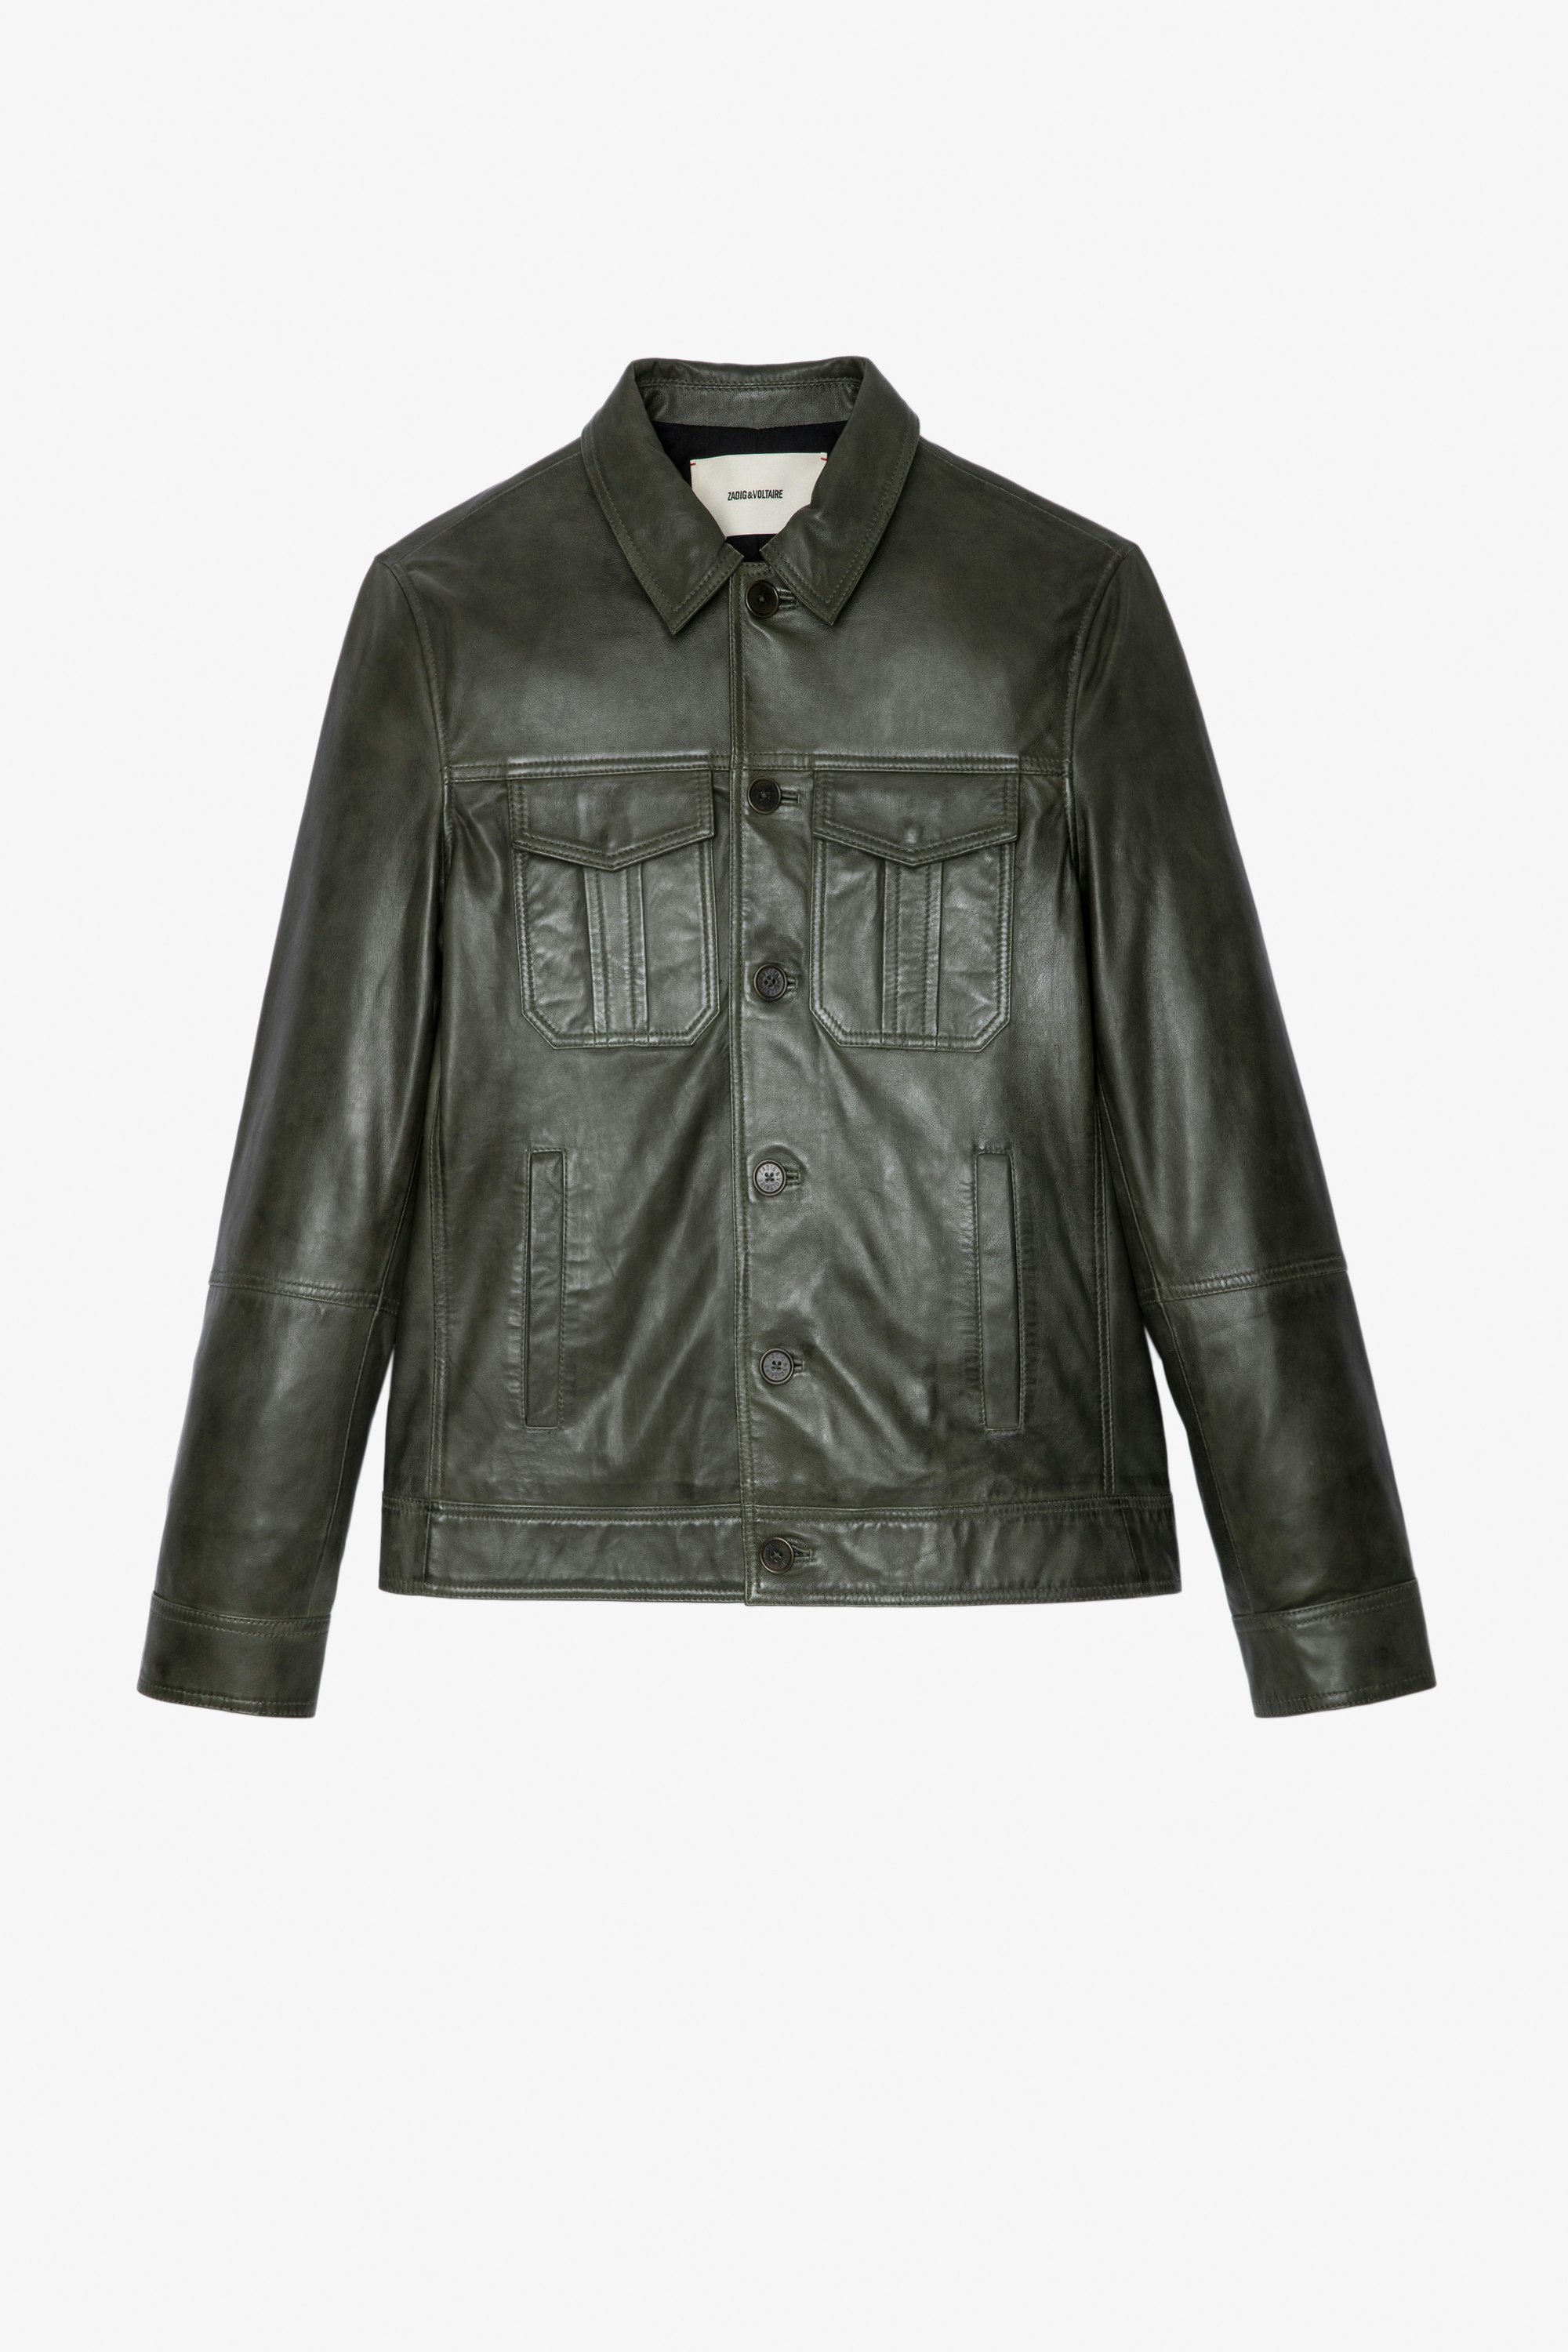 Lasso Jacket Men's jacket in green leather